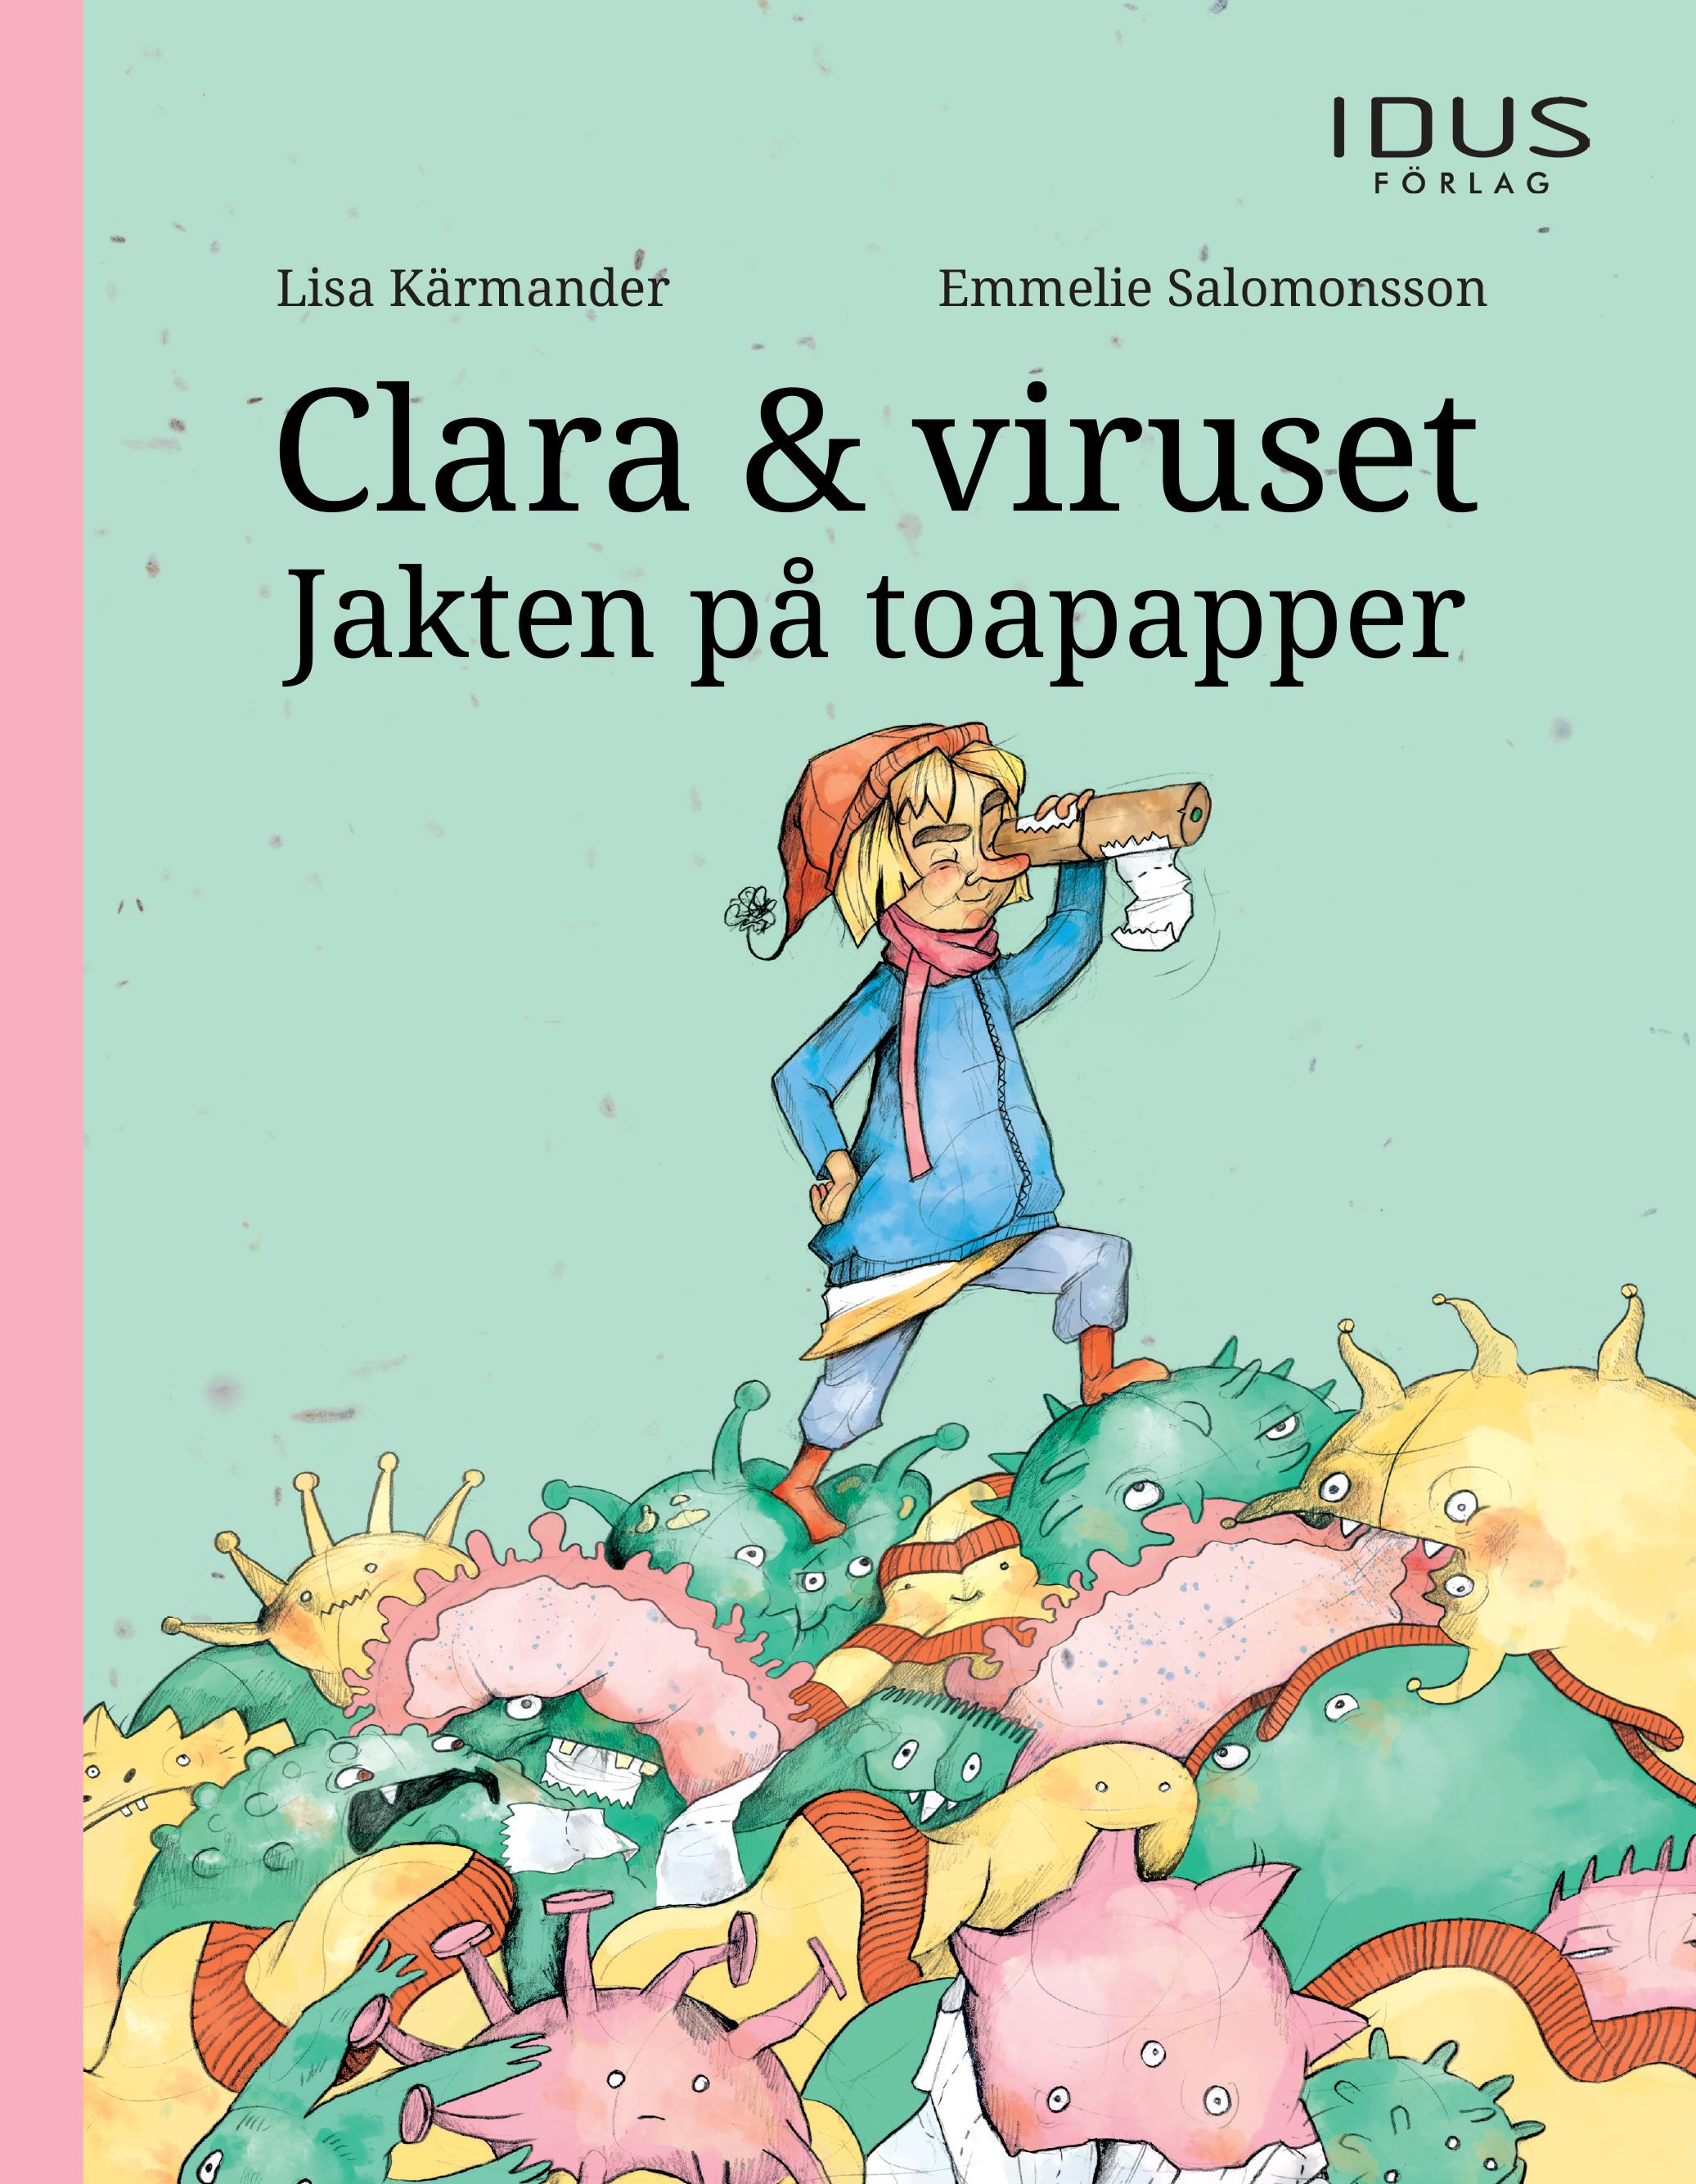 Clara & viruset : Jakten på toapapper, e-bok av Lisa Kärmander